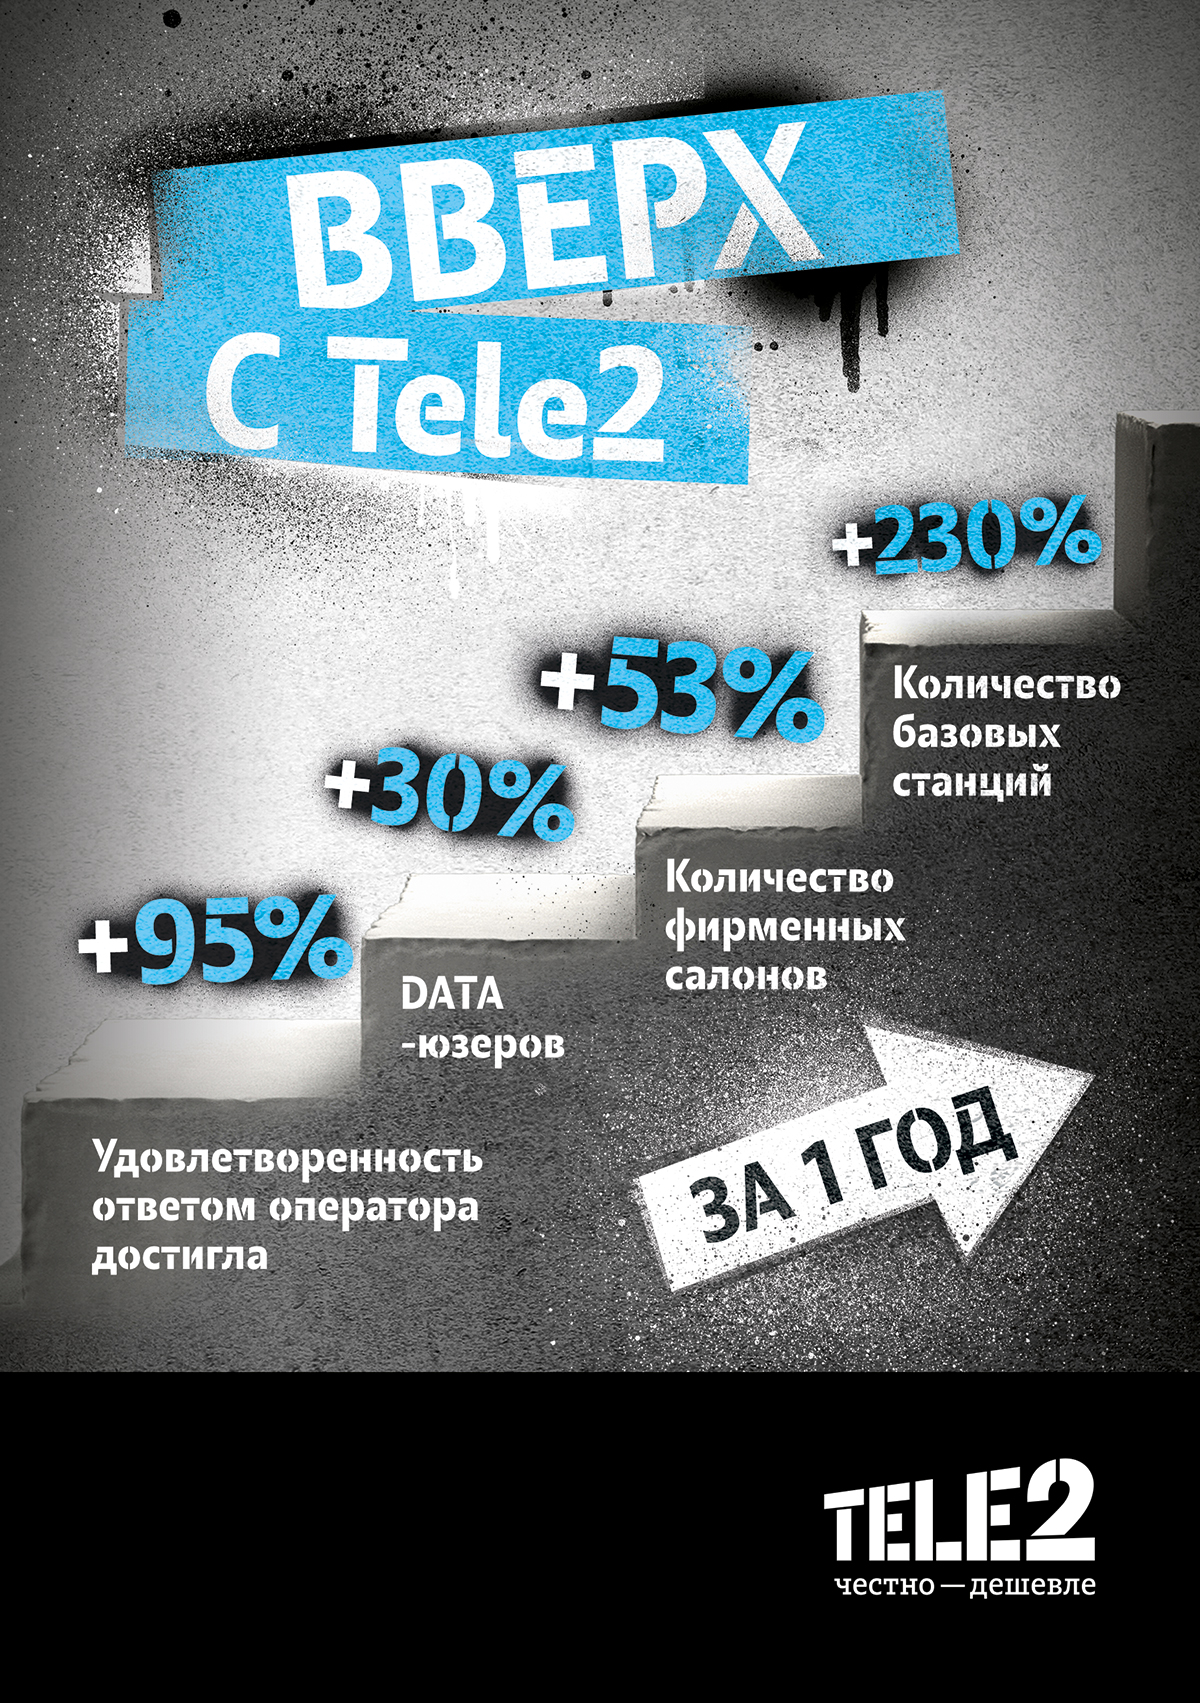 Tele2 увеличила количество базовых станций в Волгоградской области в 3 раза